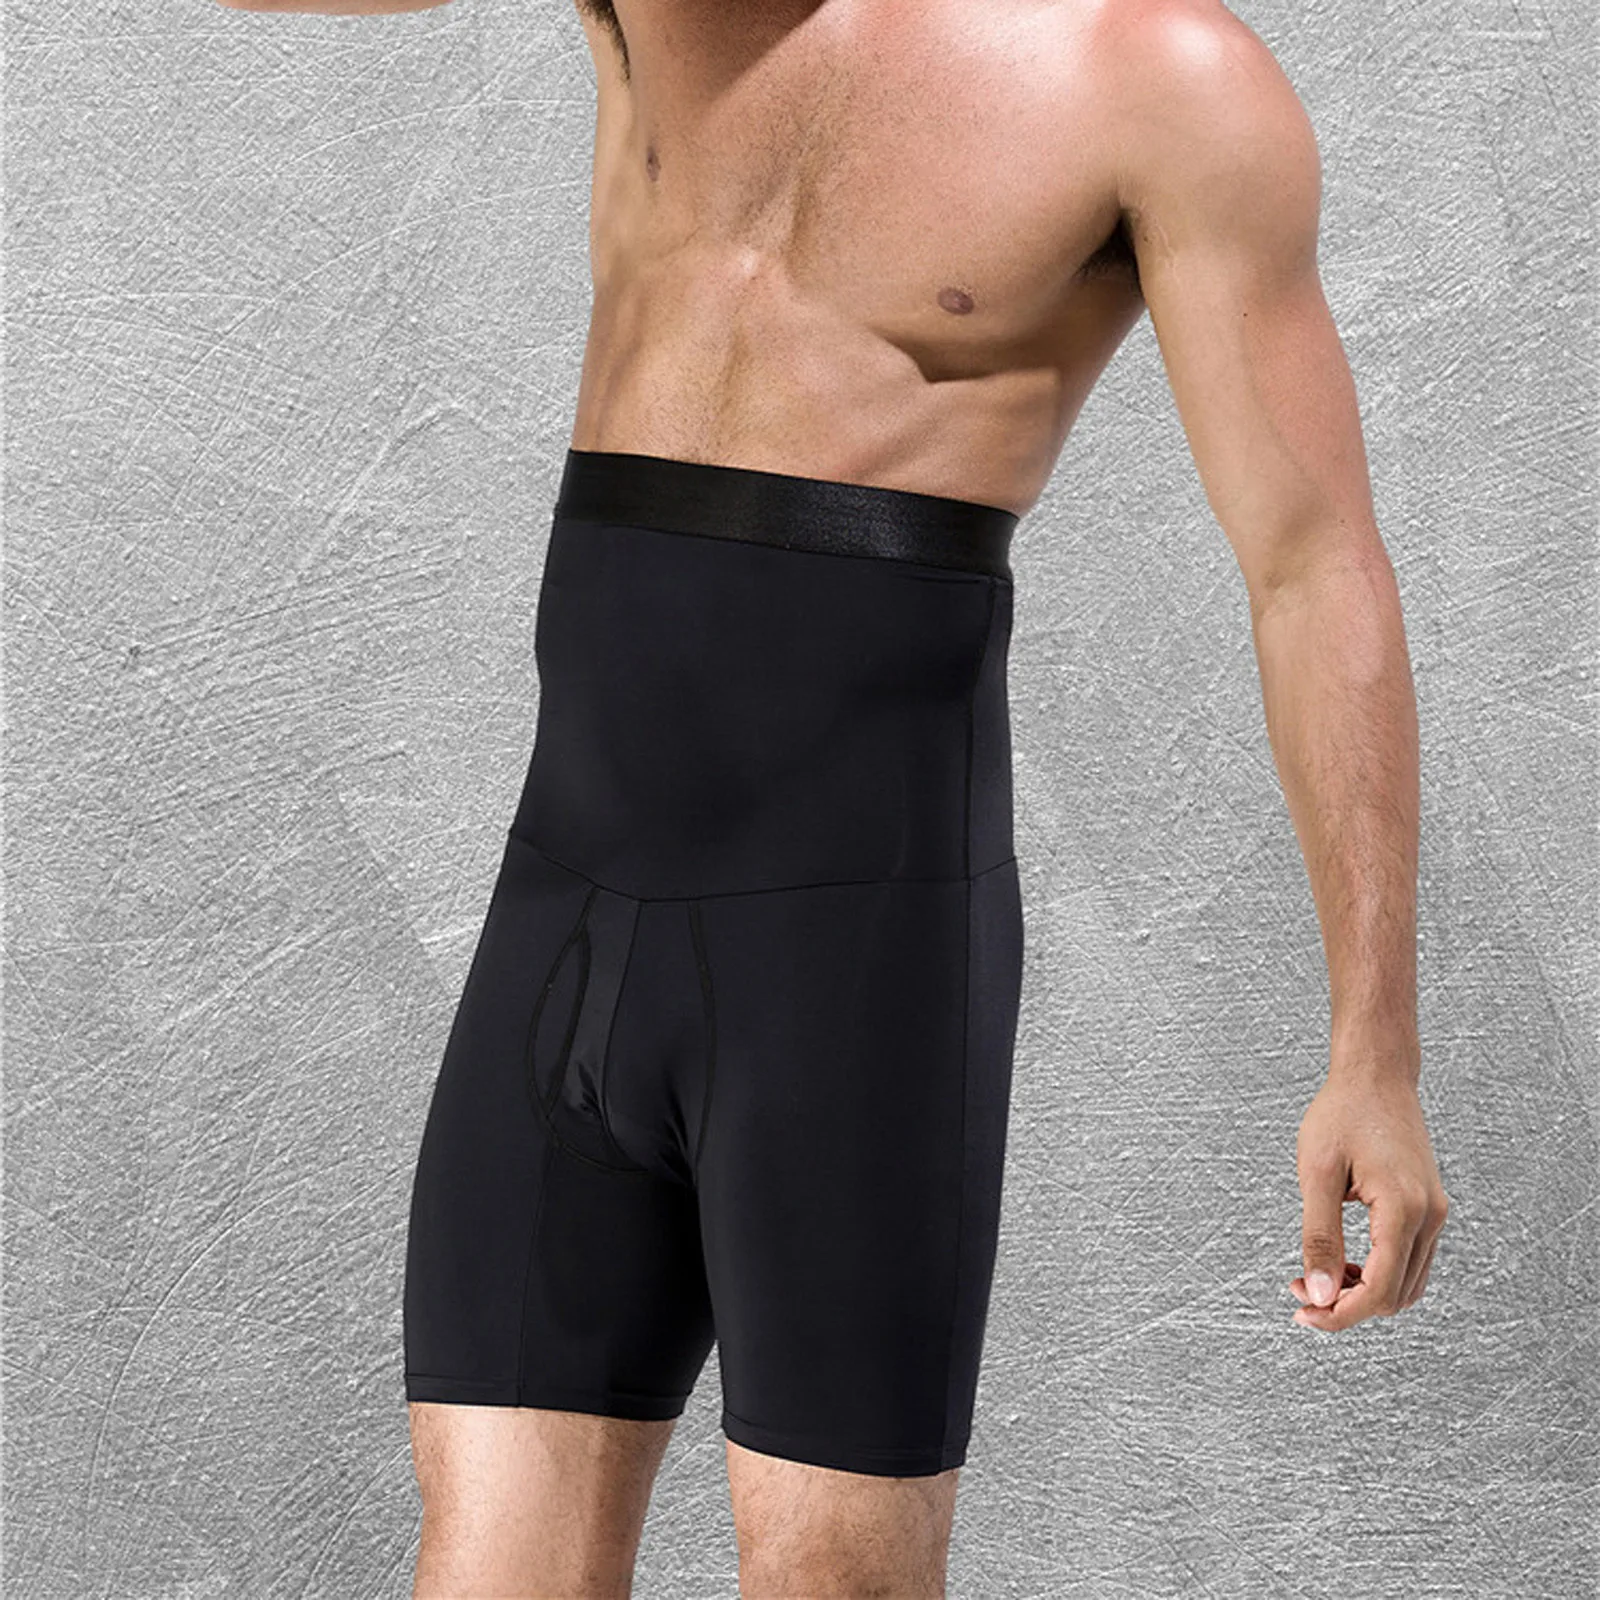 Корректирующее белье для мужчин компрессионные шорты формирователь тела